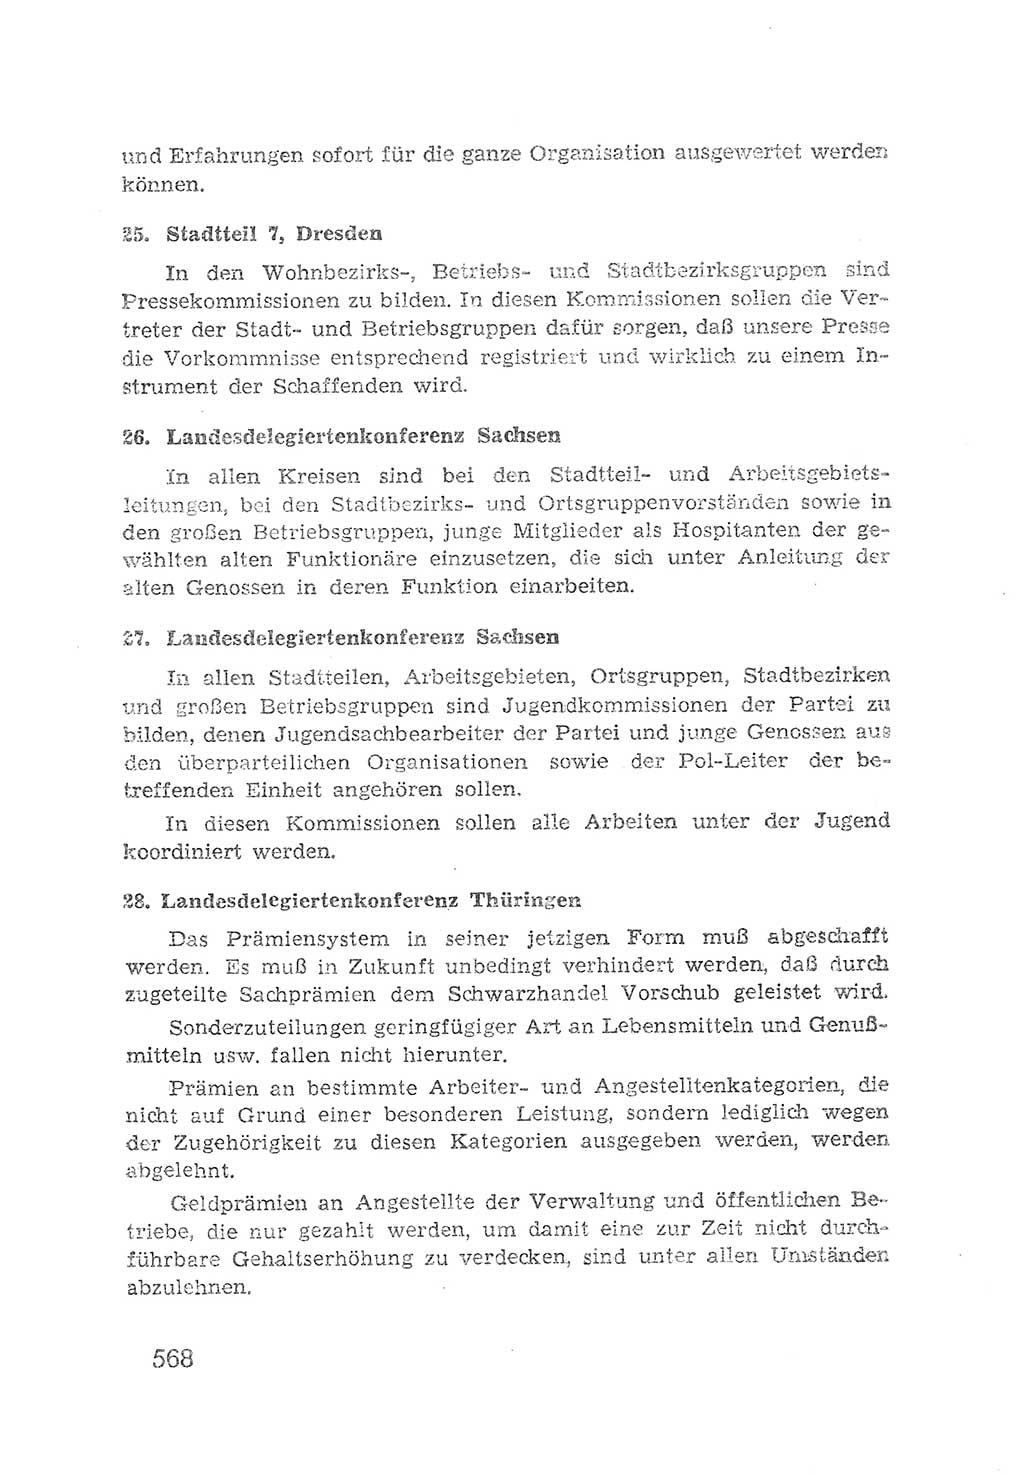 Protokoll der Verhandlungen des 2. Parteitages der Sozialistischen Einheitspartei Deutschlands (SED) [Sowjetische Besatzungszone (SBZ) Deutschlands] 1947, Seite 568 (Prot. Verh. 2. PT SED SBZ Dtl. 1947, S. 568)